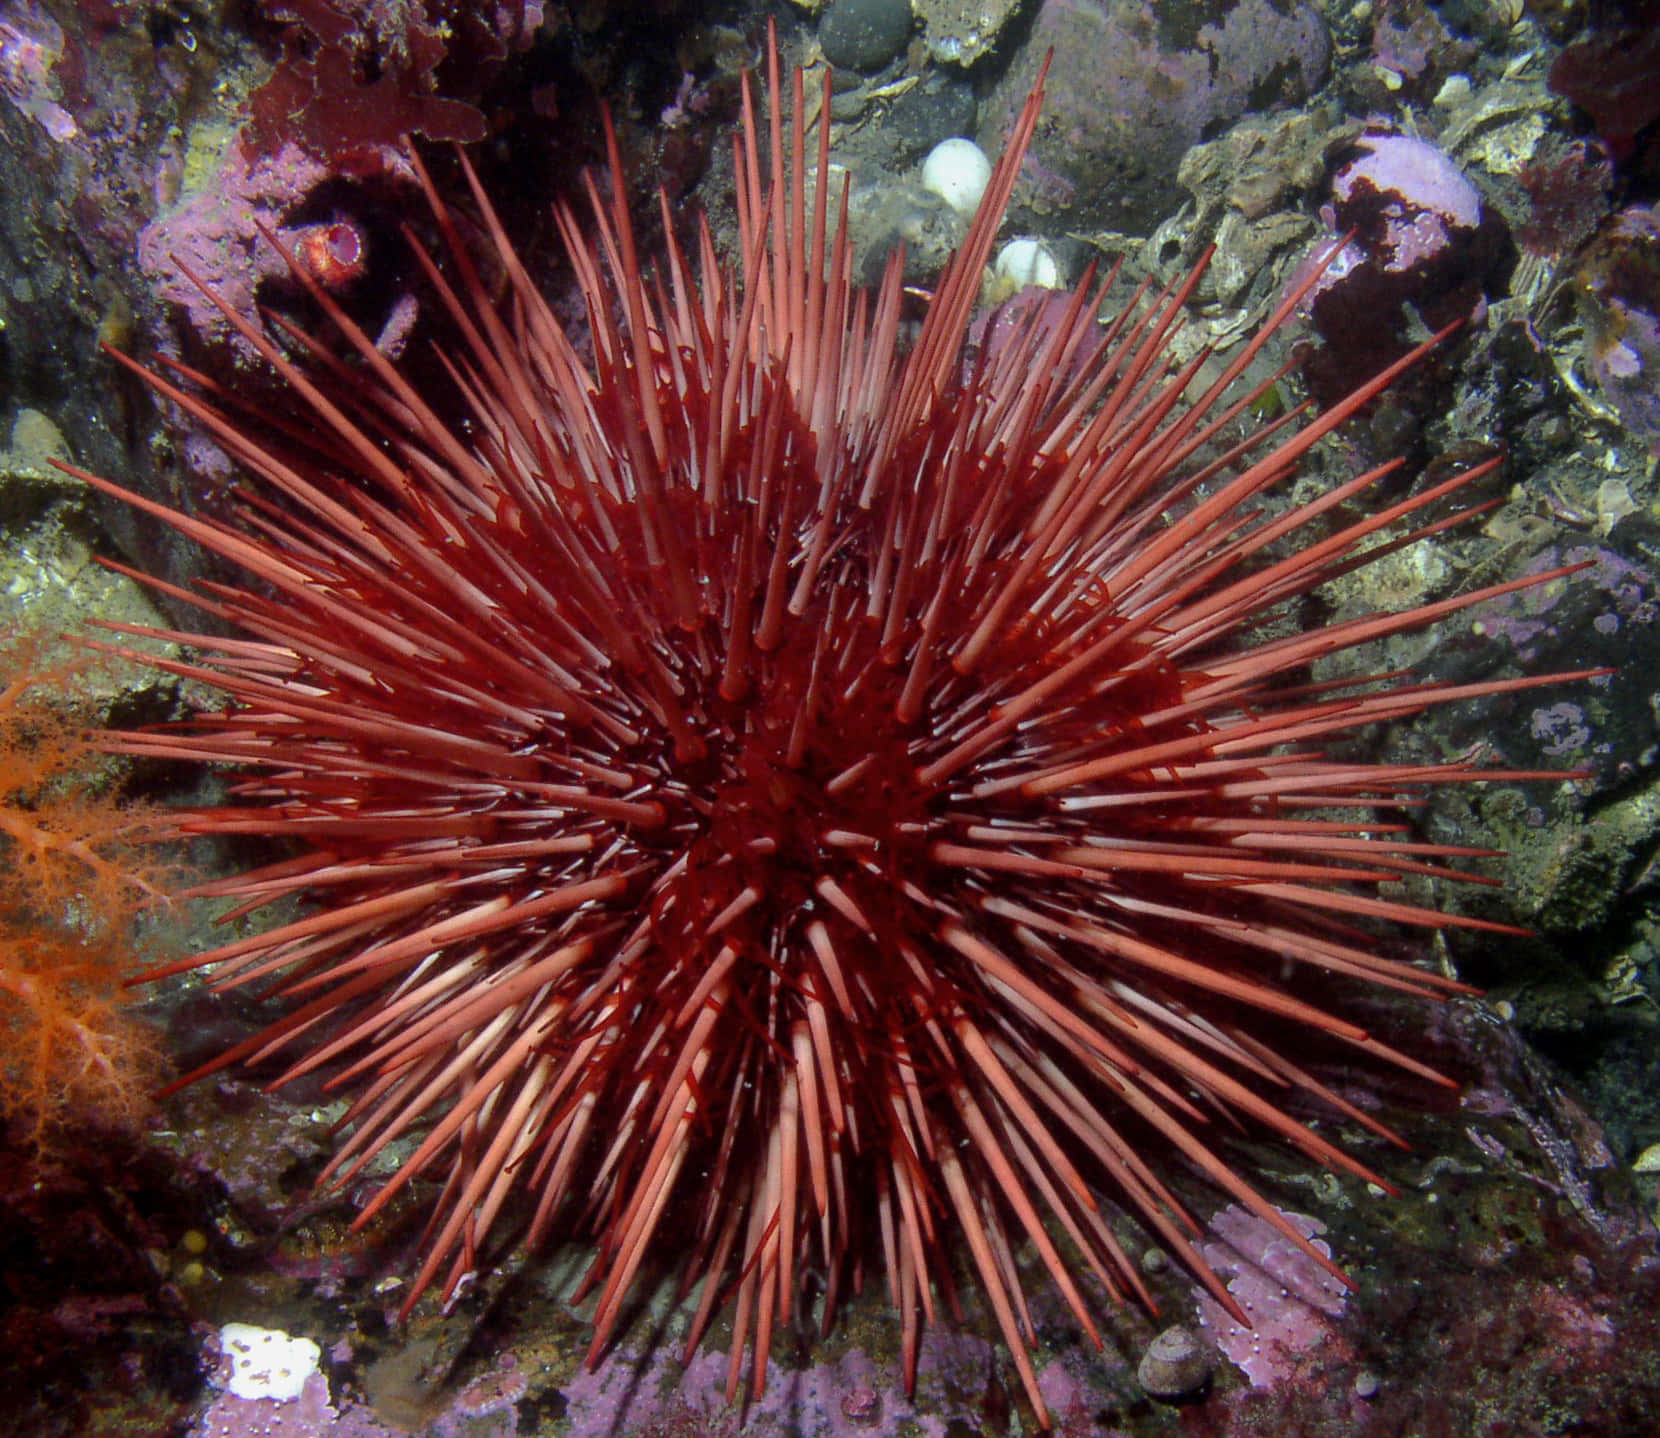 Red Sea Urchin Underwater Wallpaper